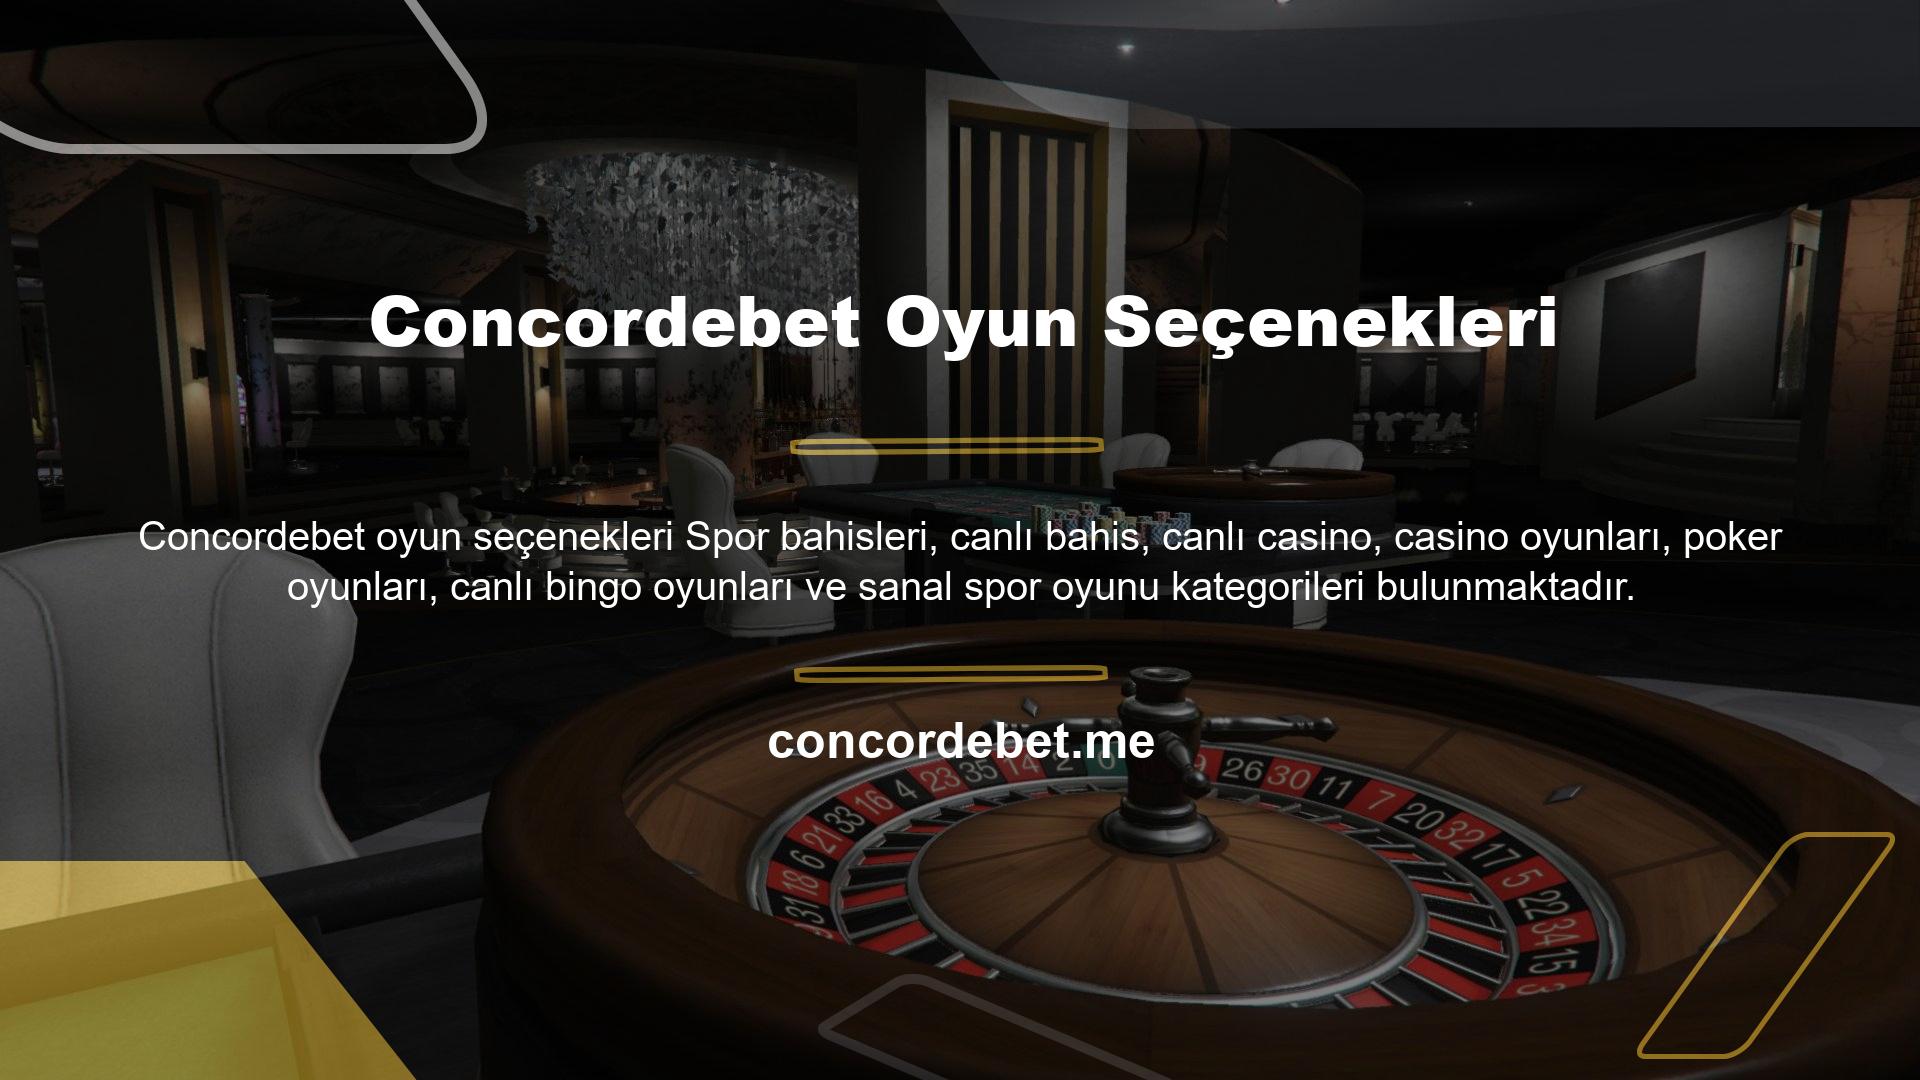 Tüm oyunların listesini sitenin üst kısmındaki Concordebet oyun seçenekleri çubuğundan kolayca görüntüleyebilirsiniz